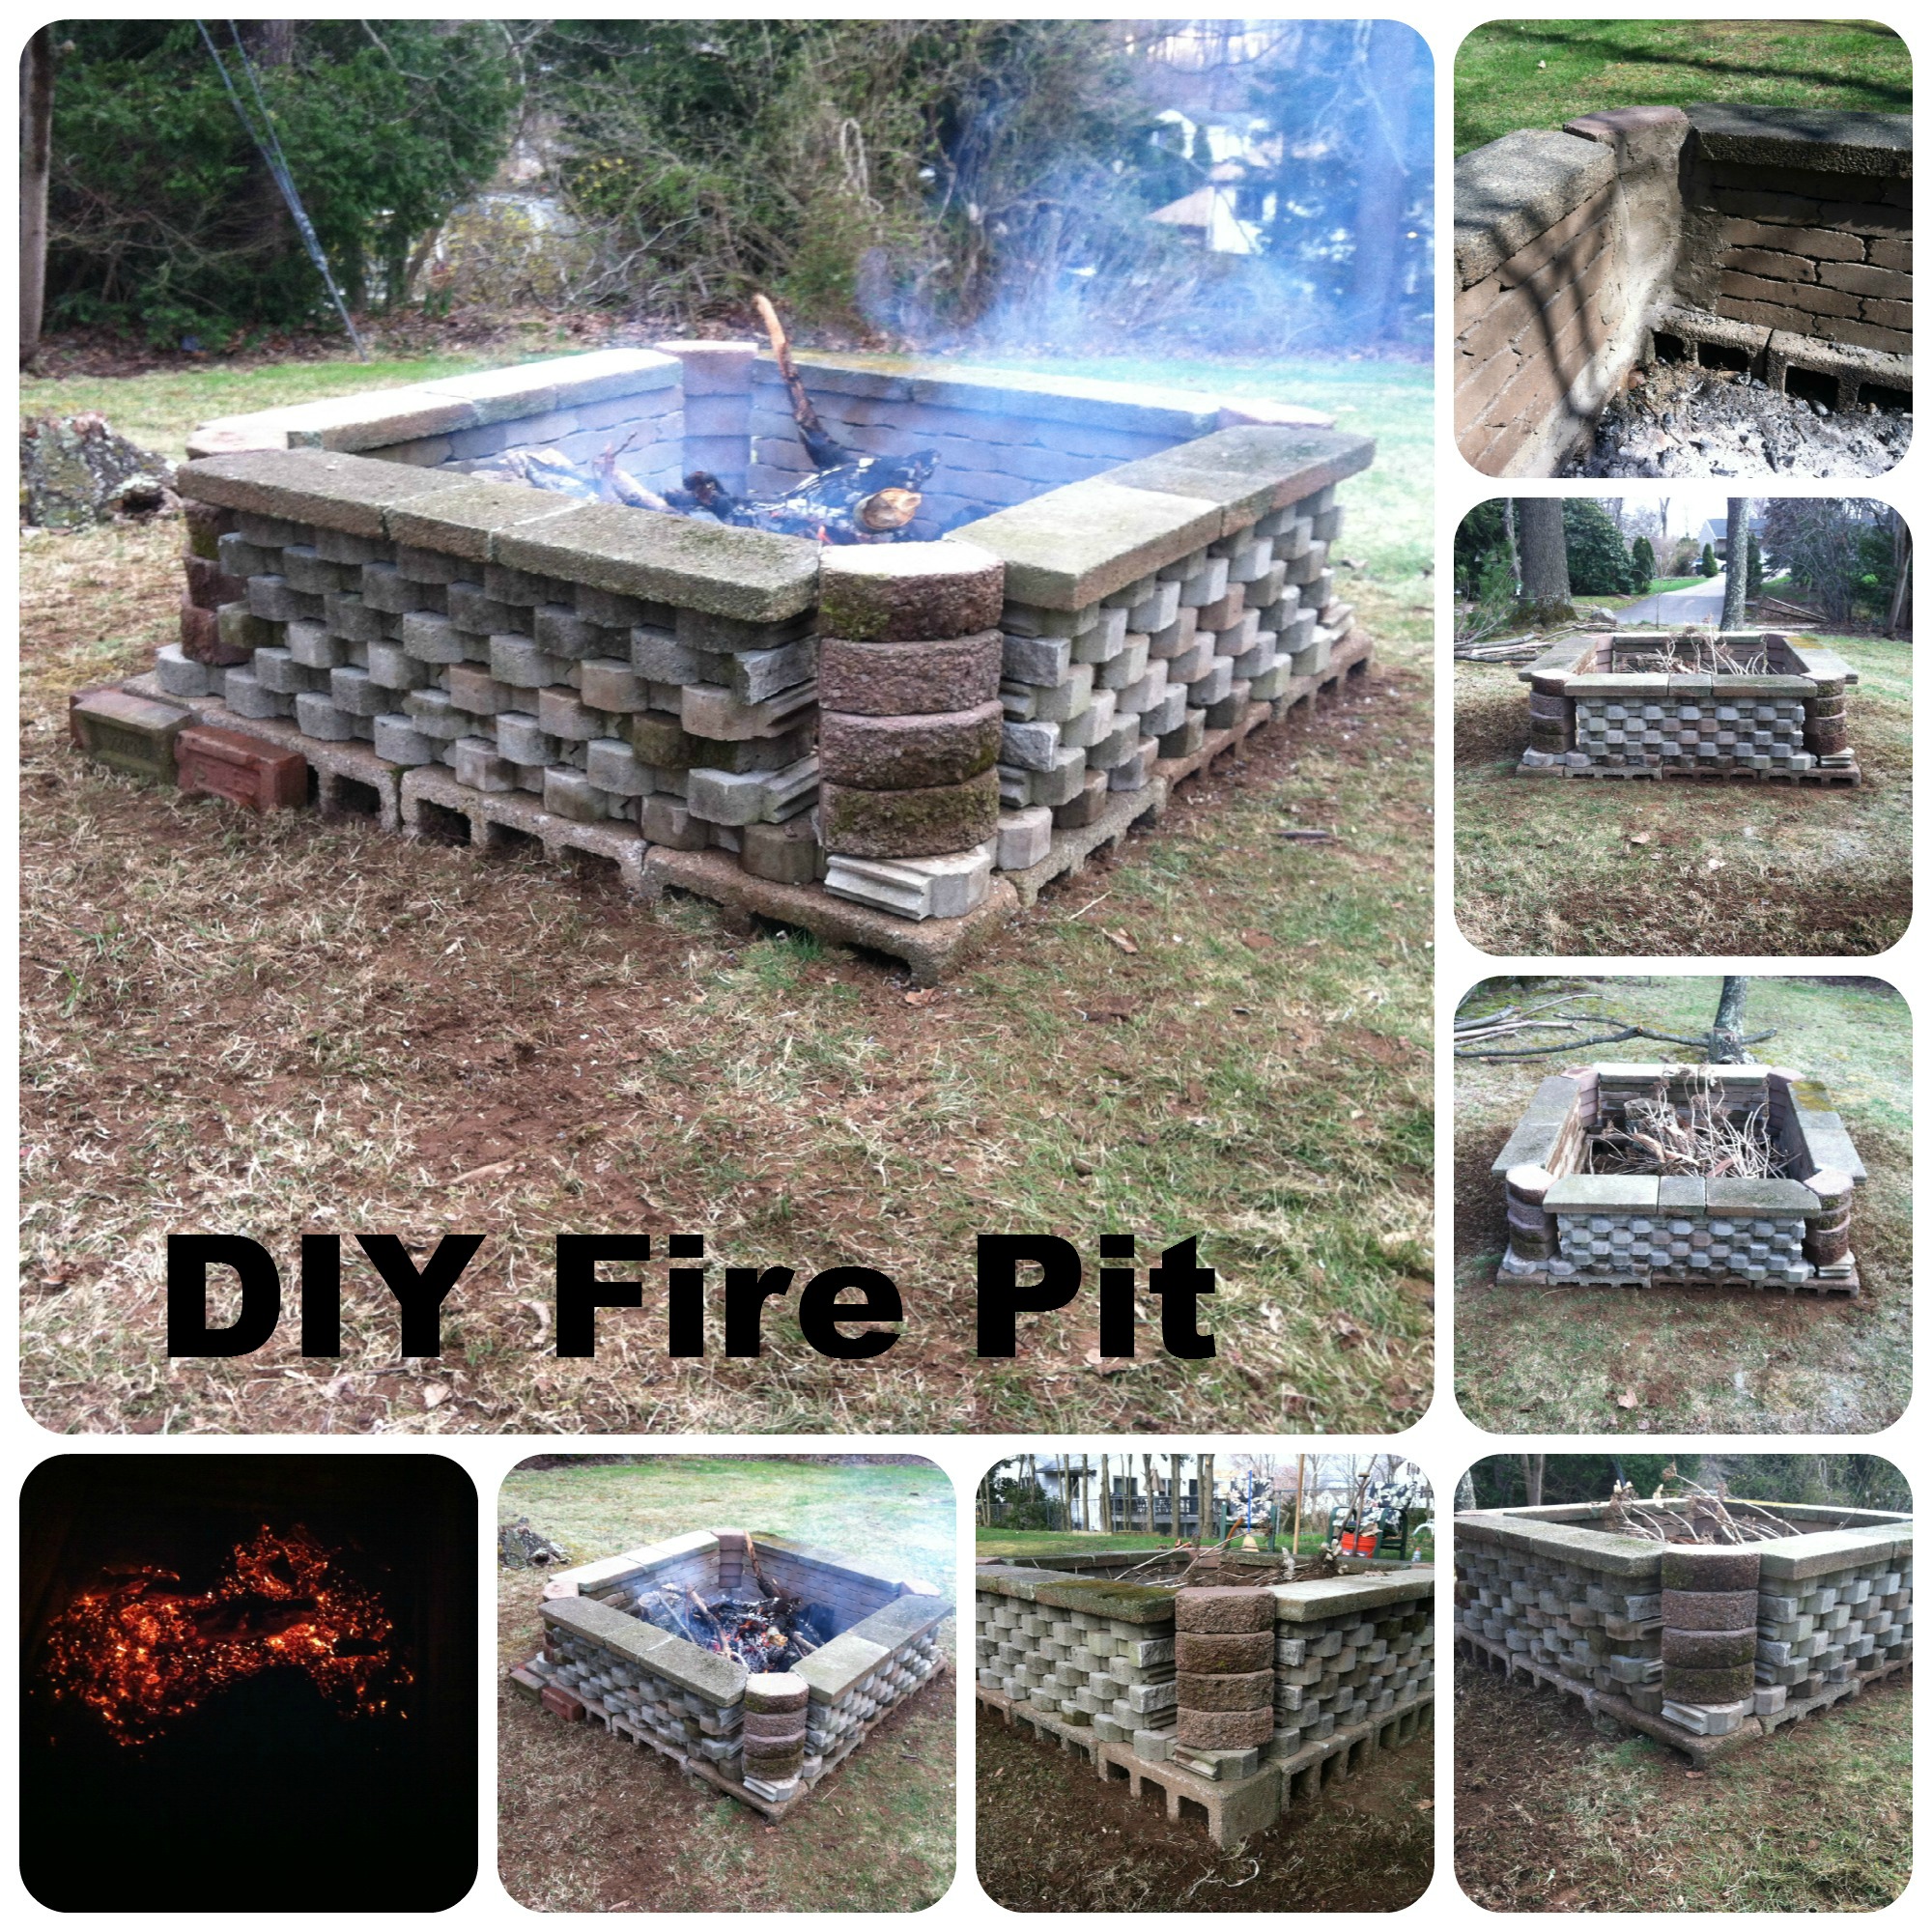 DIY Fire Pit area